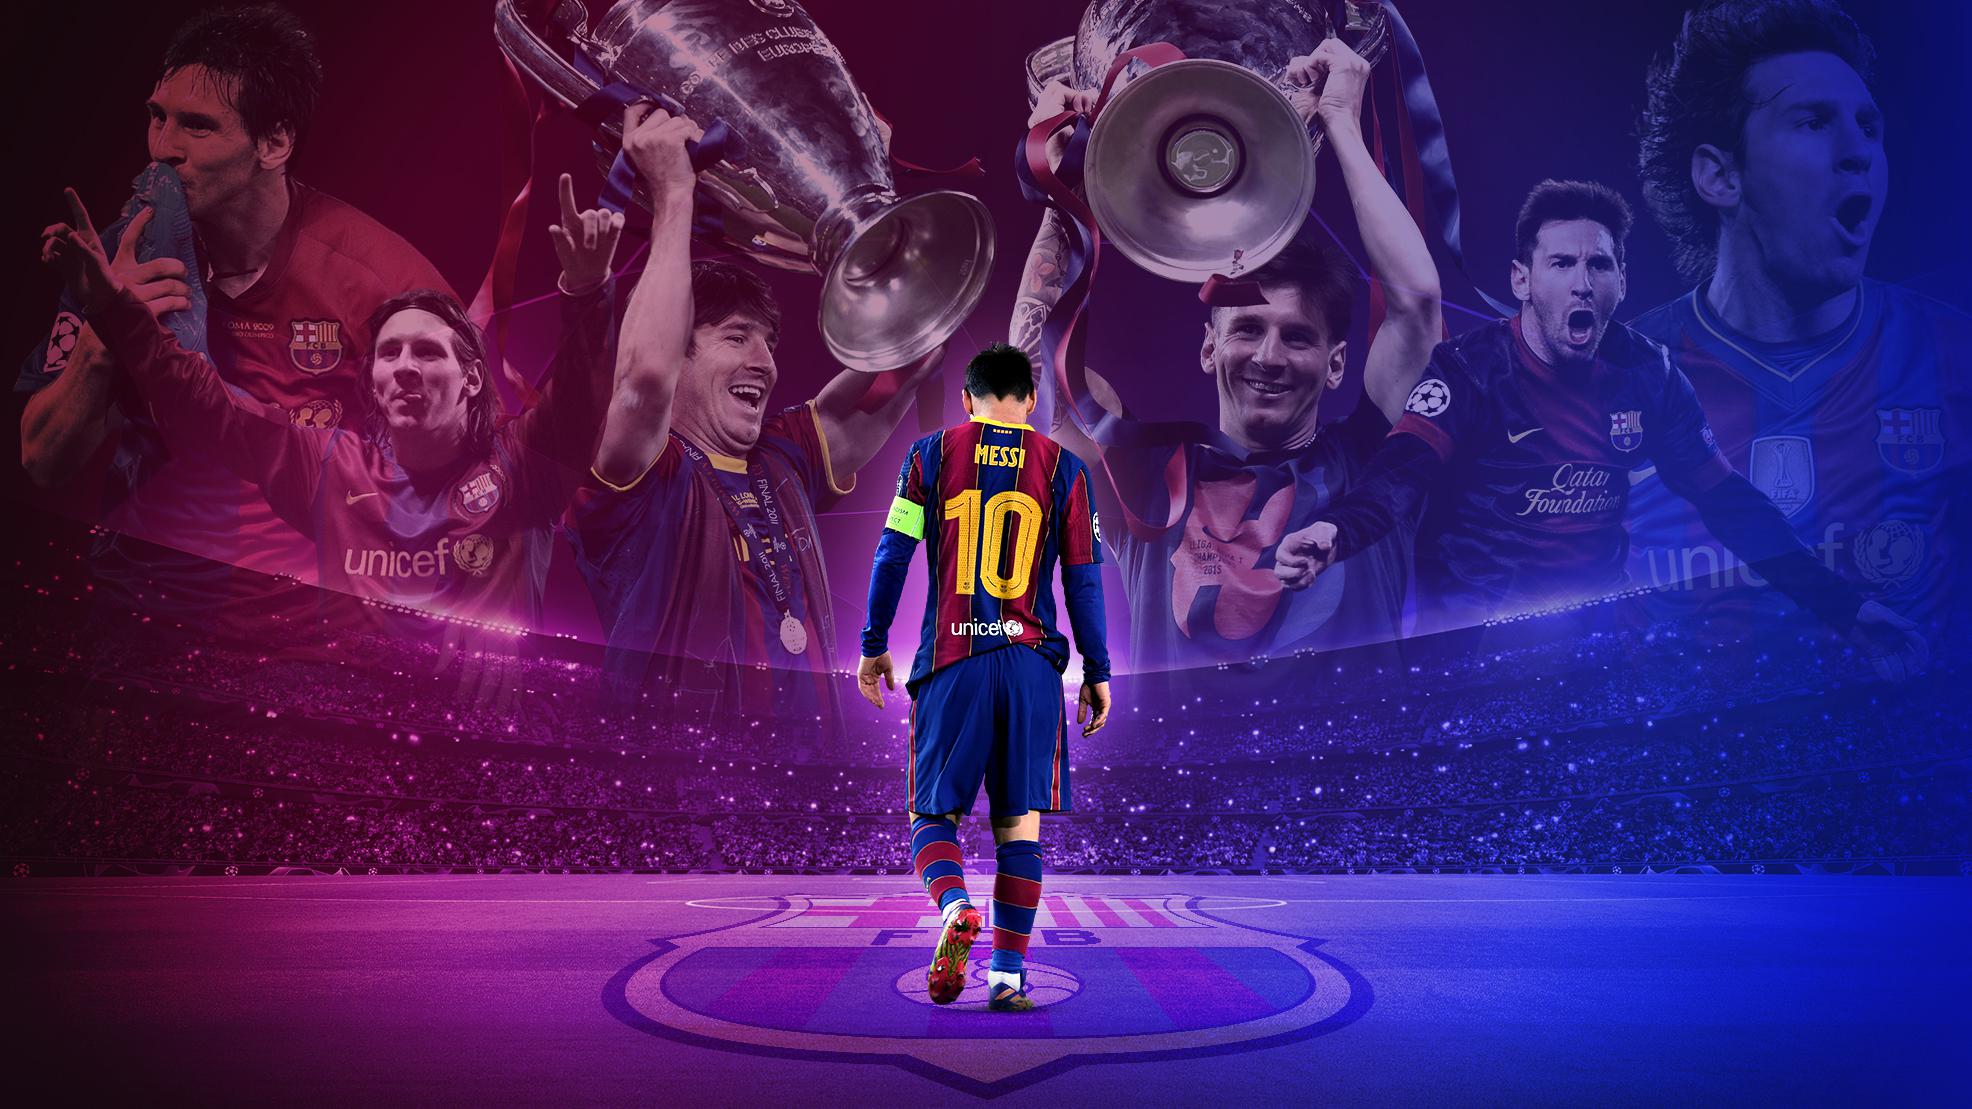 Criptoempresa Socios.com anuncia asociación con la estrella de fútbol Lionel Messi